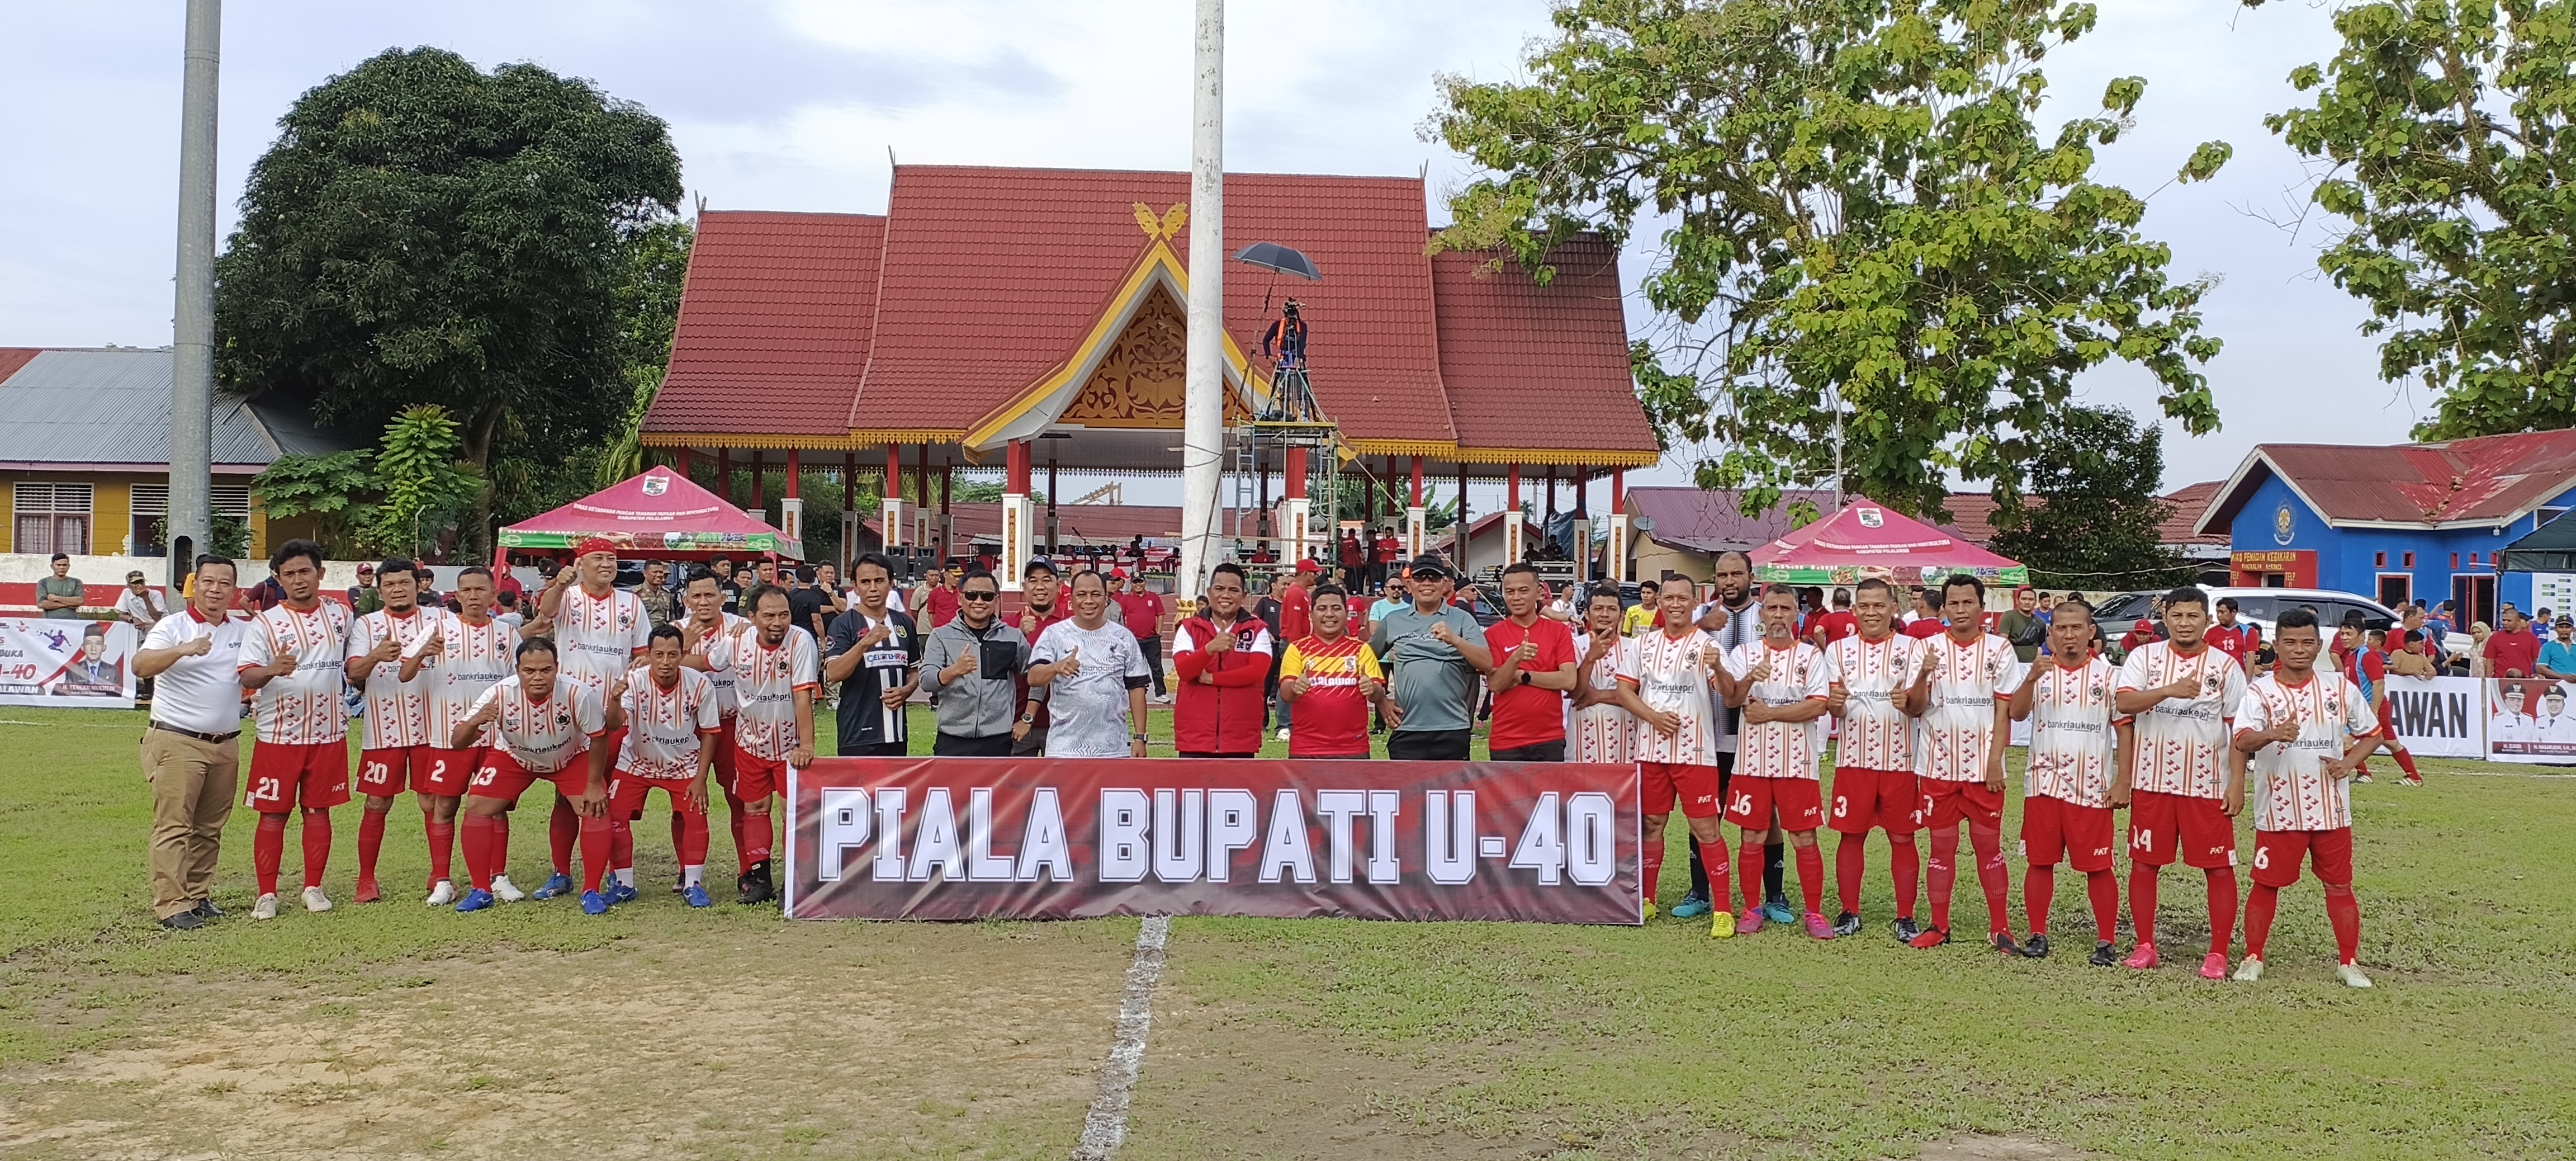 Bupati Pelalawan Buka Turnamen Piala Bupati Cup U-40